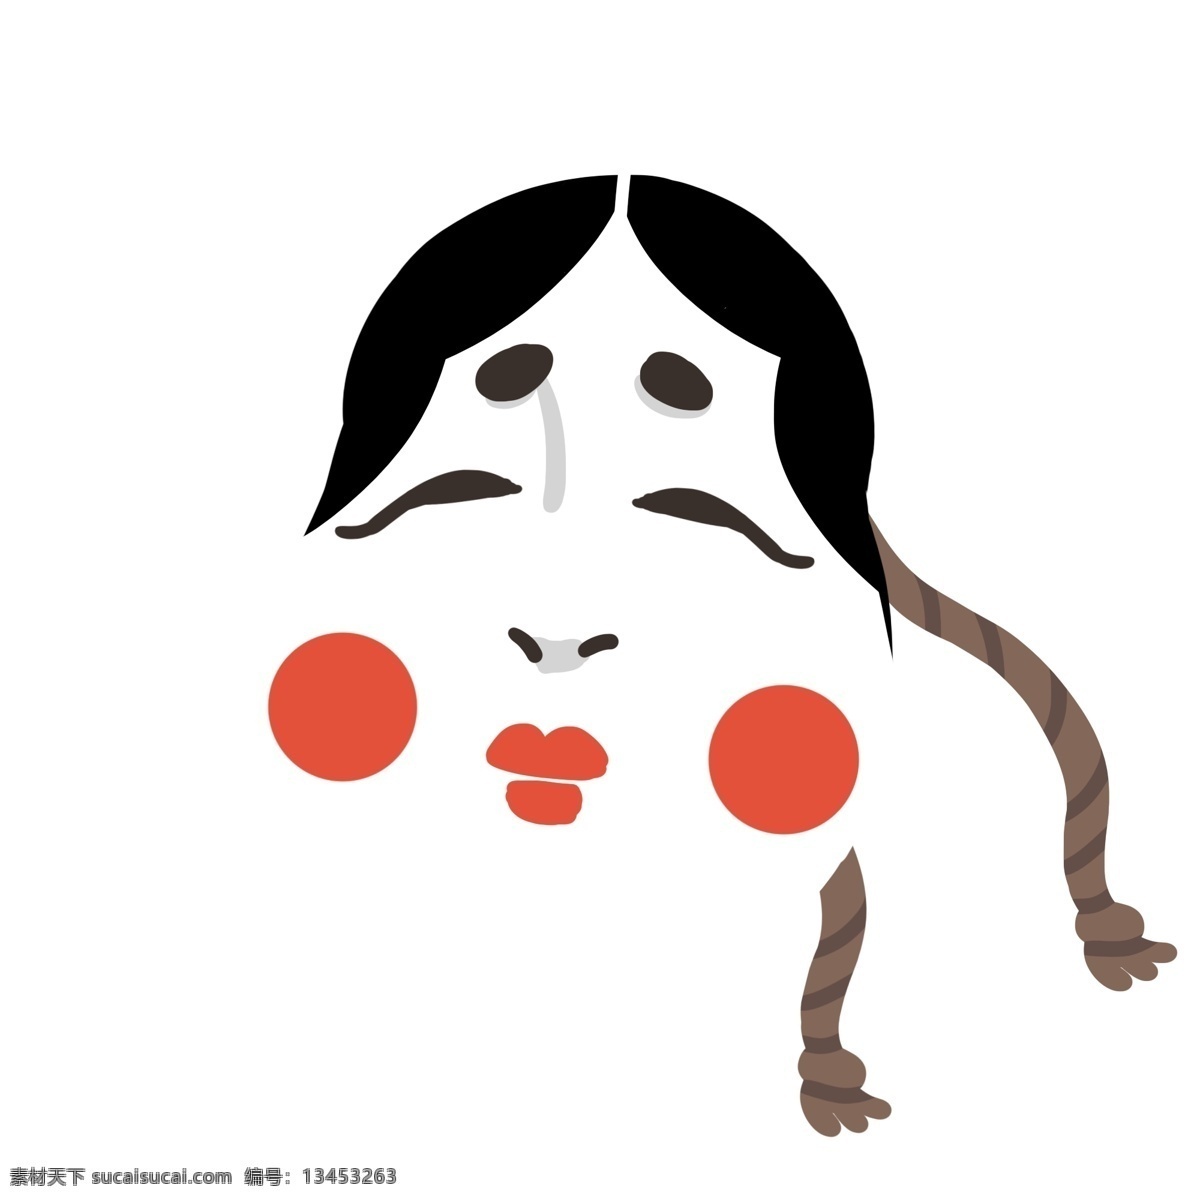 日本 面具 装饰 插画 日本面具 卡通面具 可爱的面具 日本文化 日本特色 红脸蛋 面具装饰插画